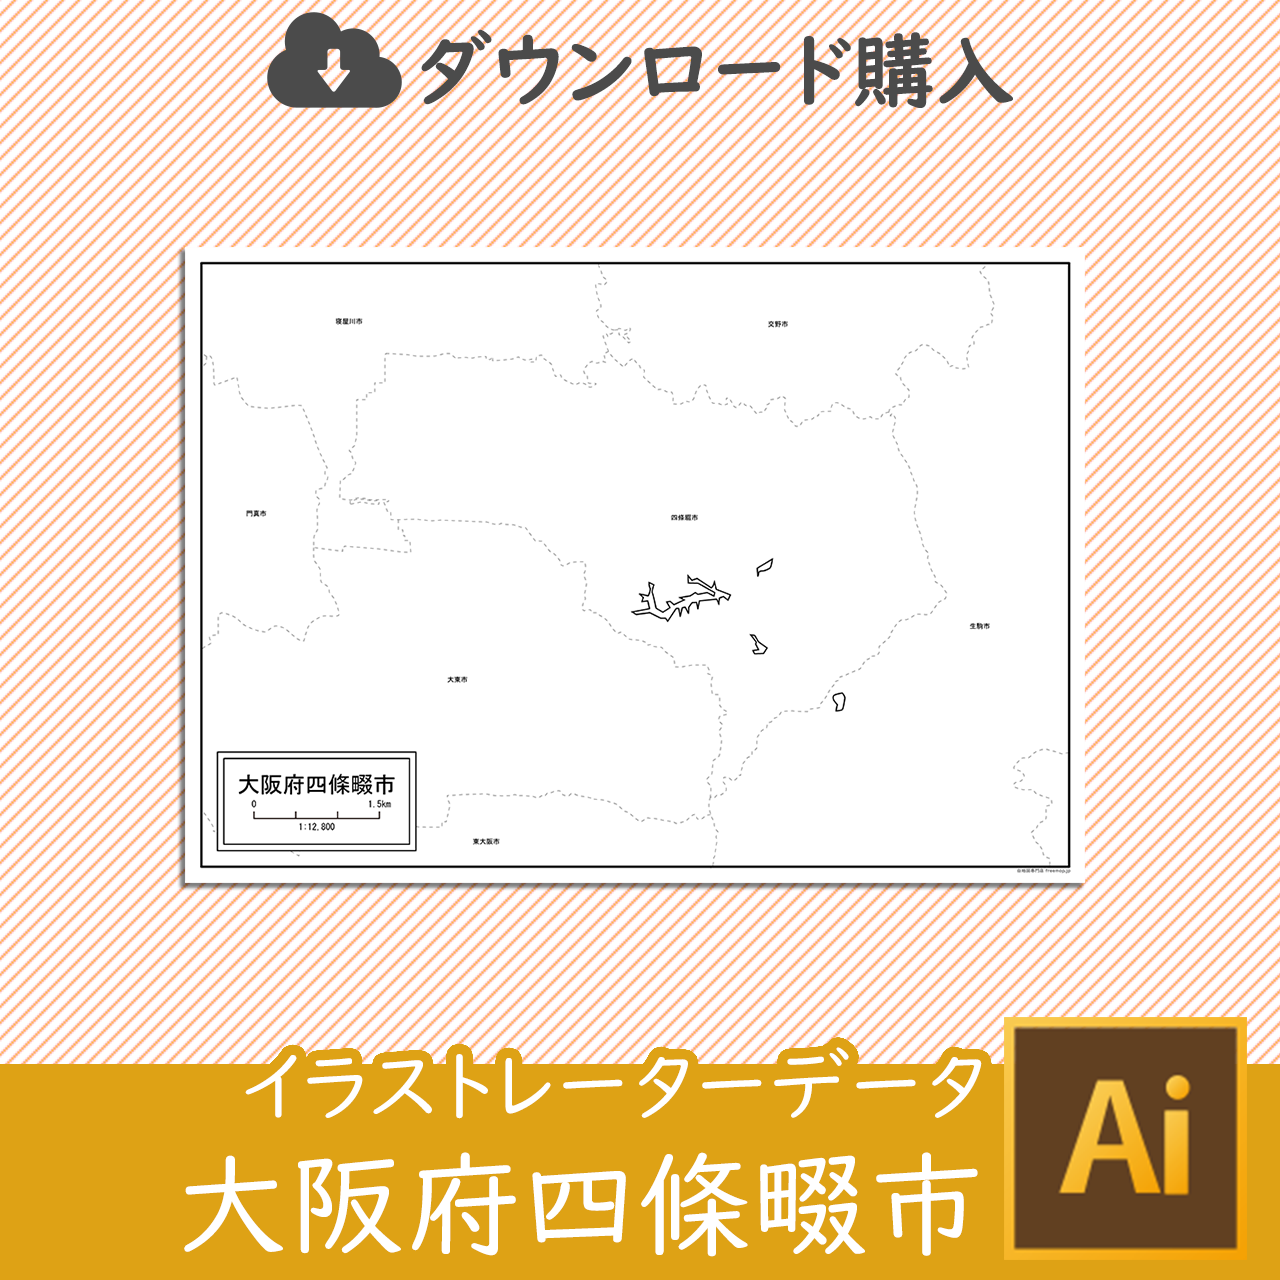 四條畷市のaiデータのサムネイル画像